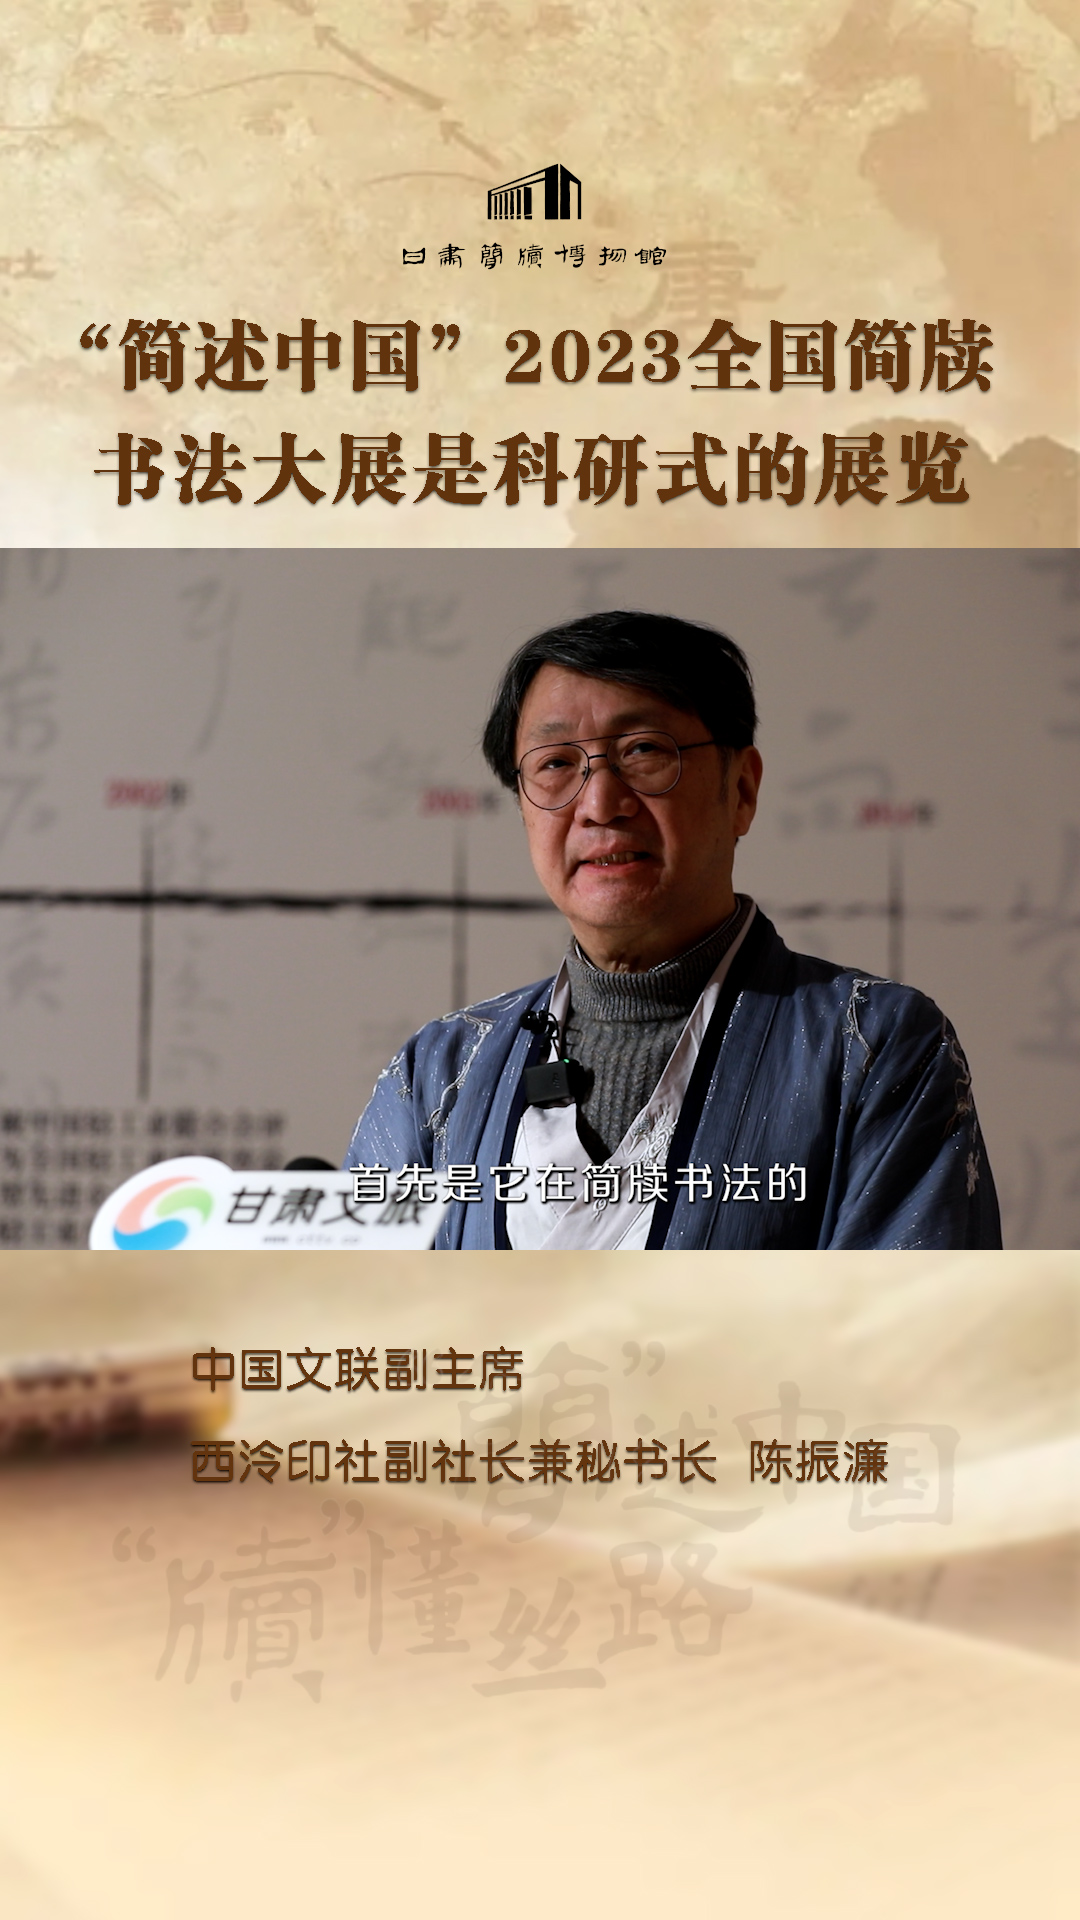 陈振濂：“简述中国”2023全国简牍书法大展是科研式的展览